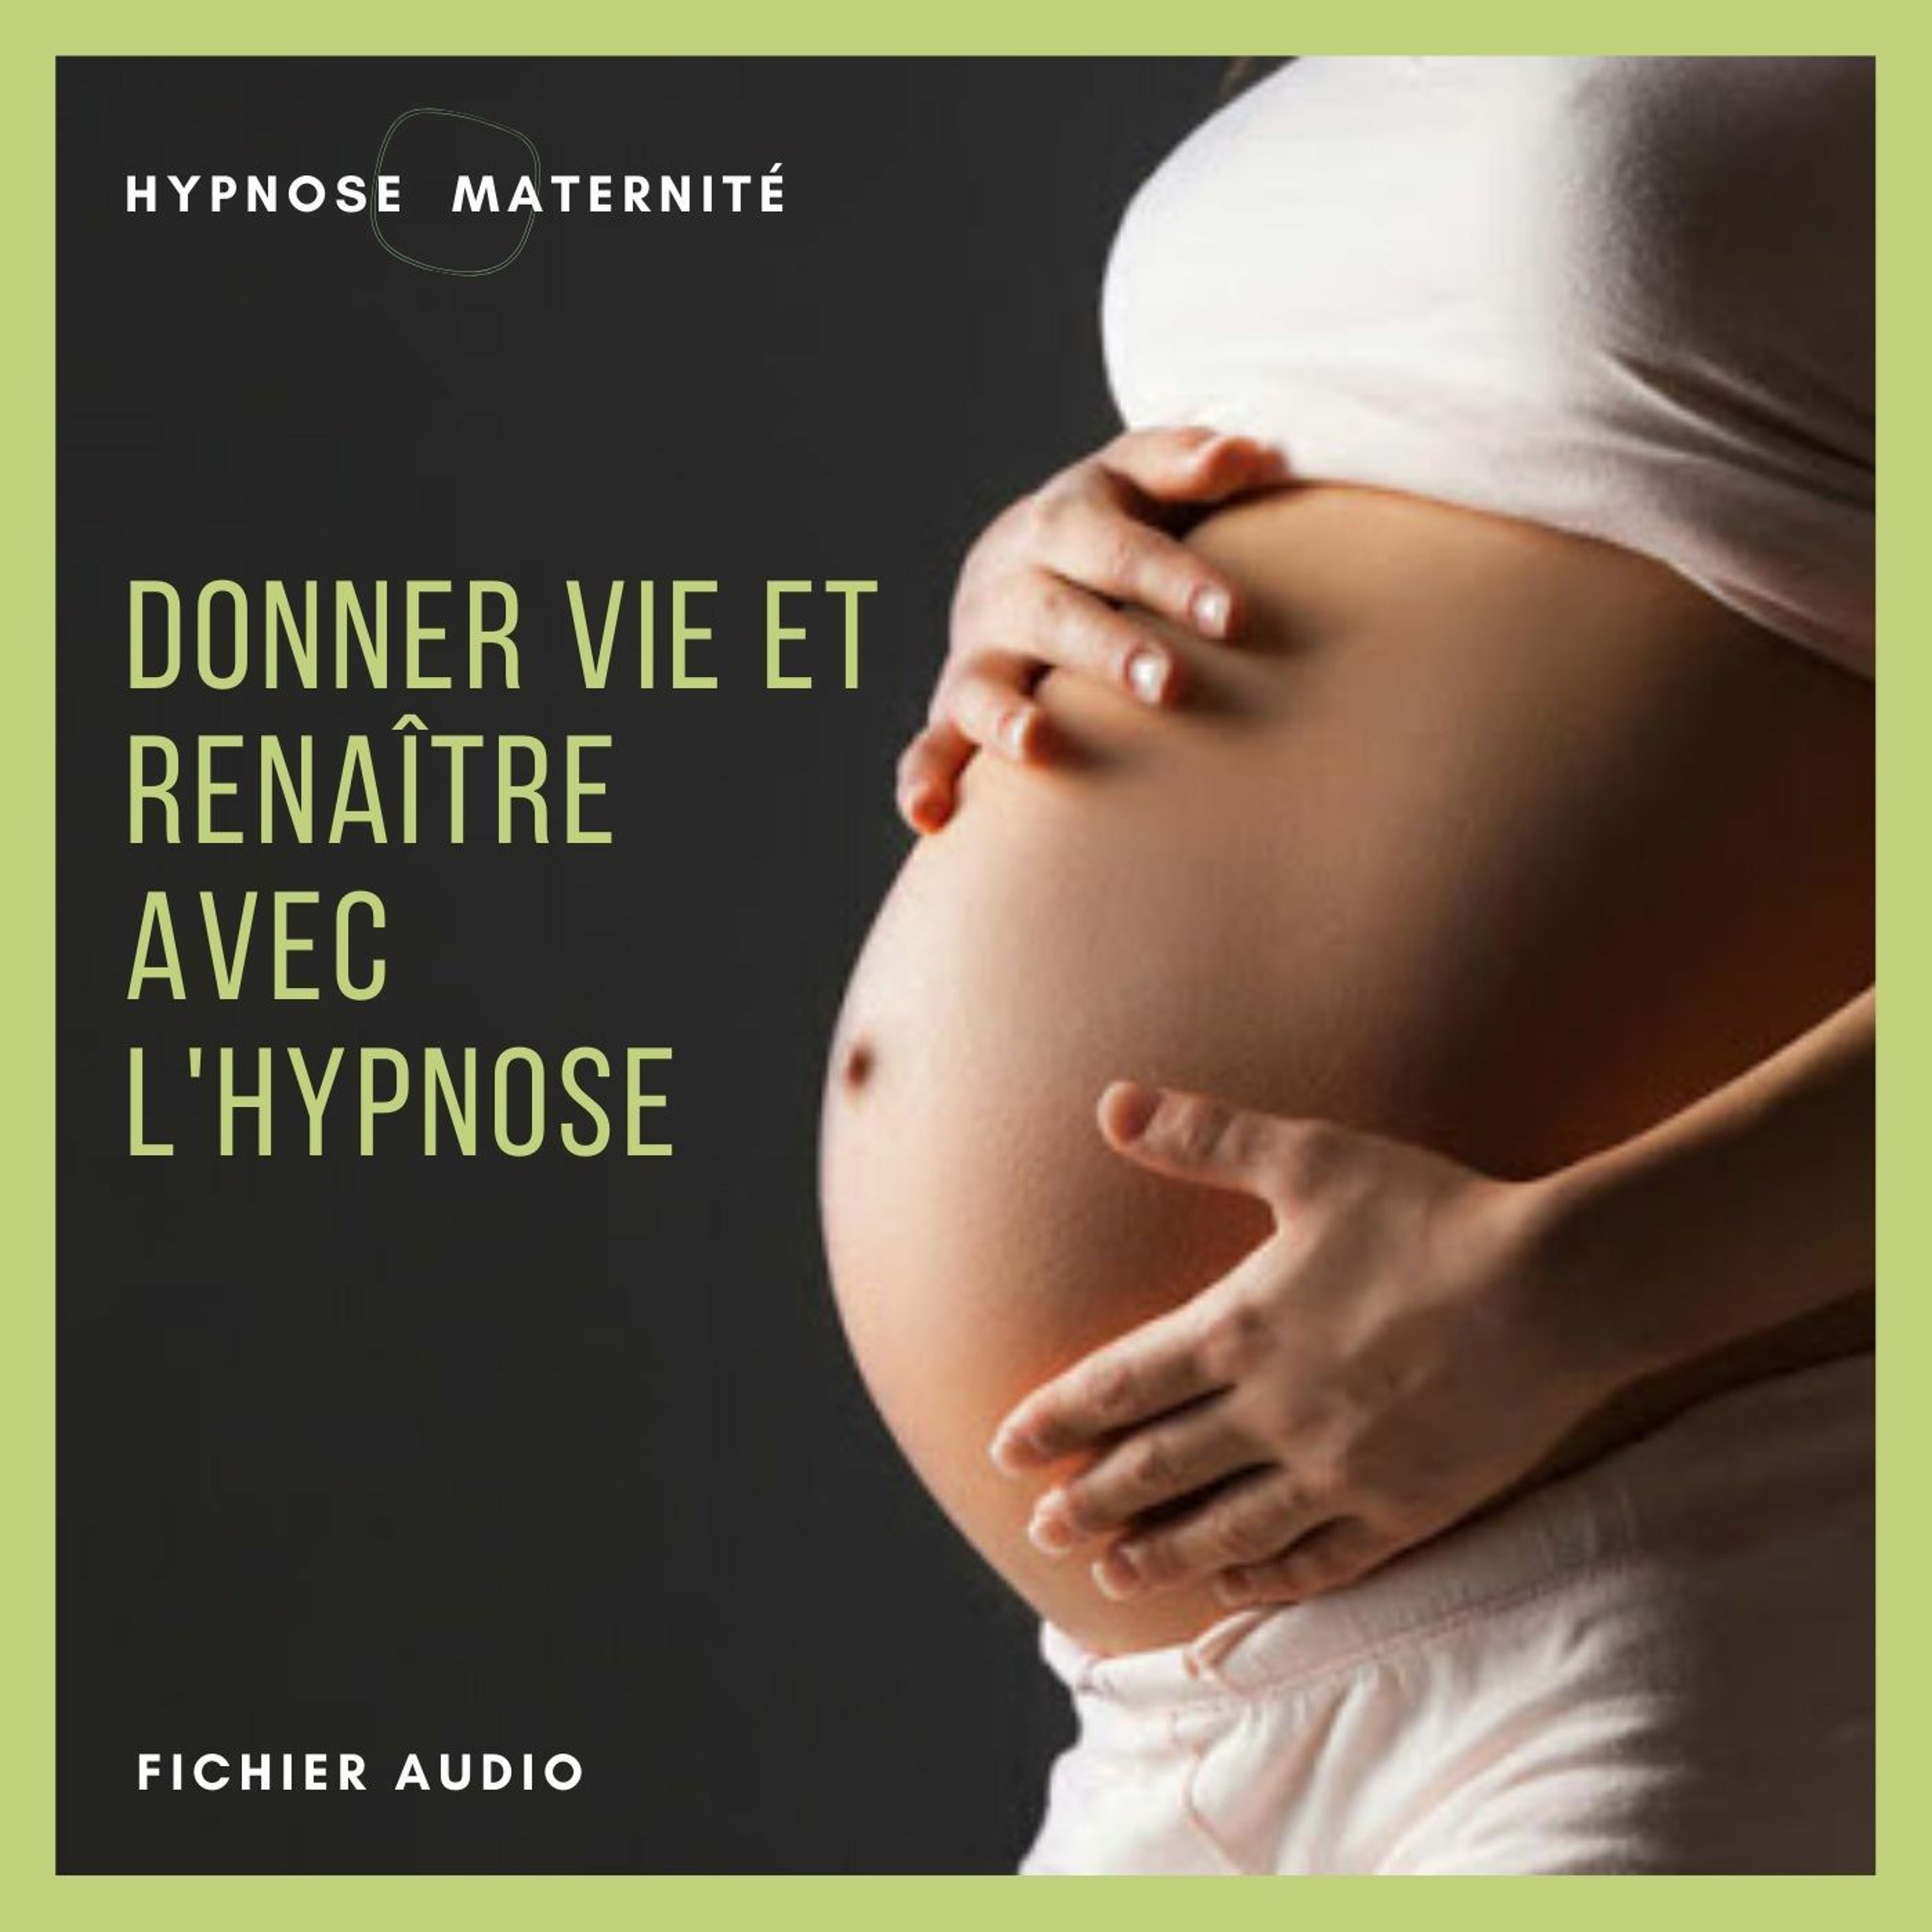 Femmes enceintes : Préparer son accouchement avec l'hypnose pour une naissance merveilleuse.